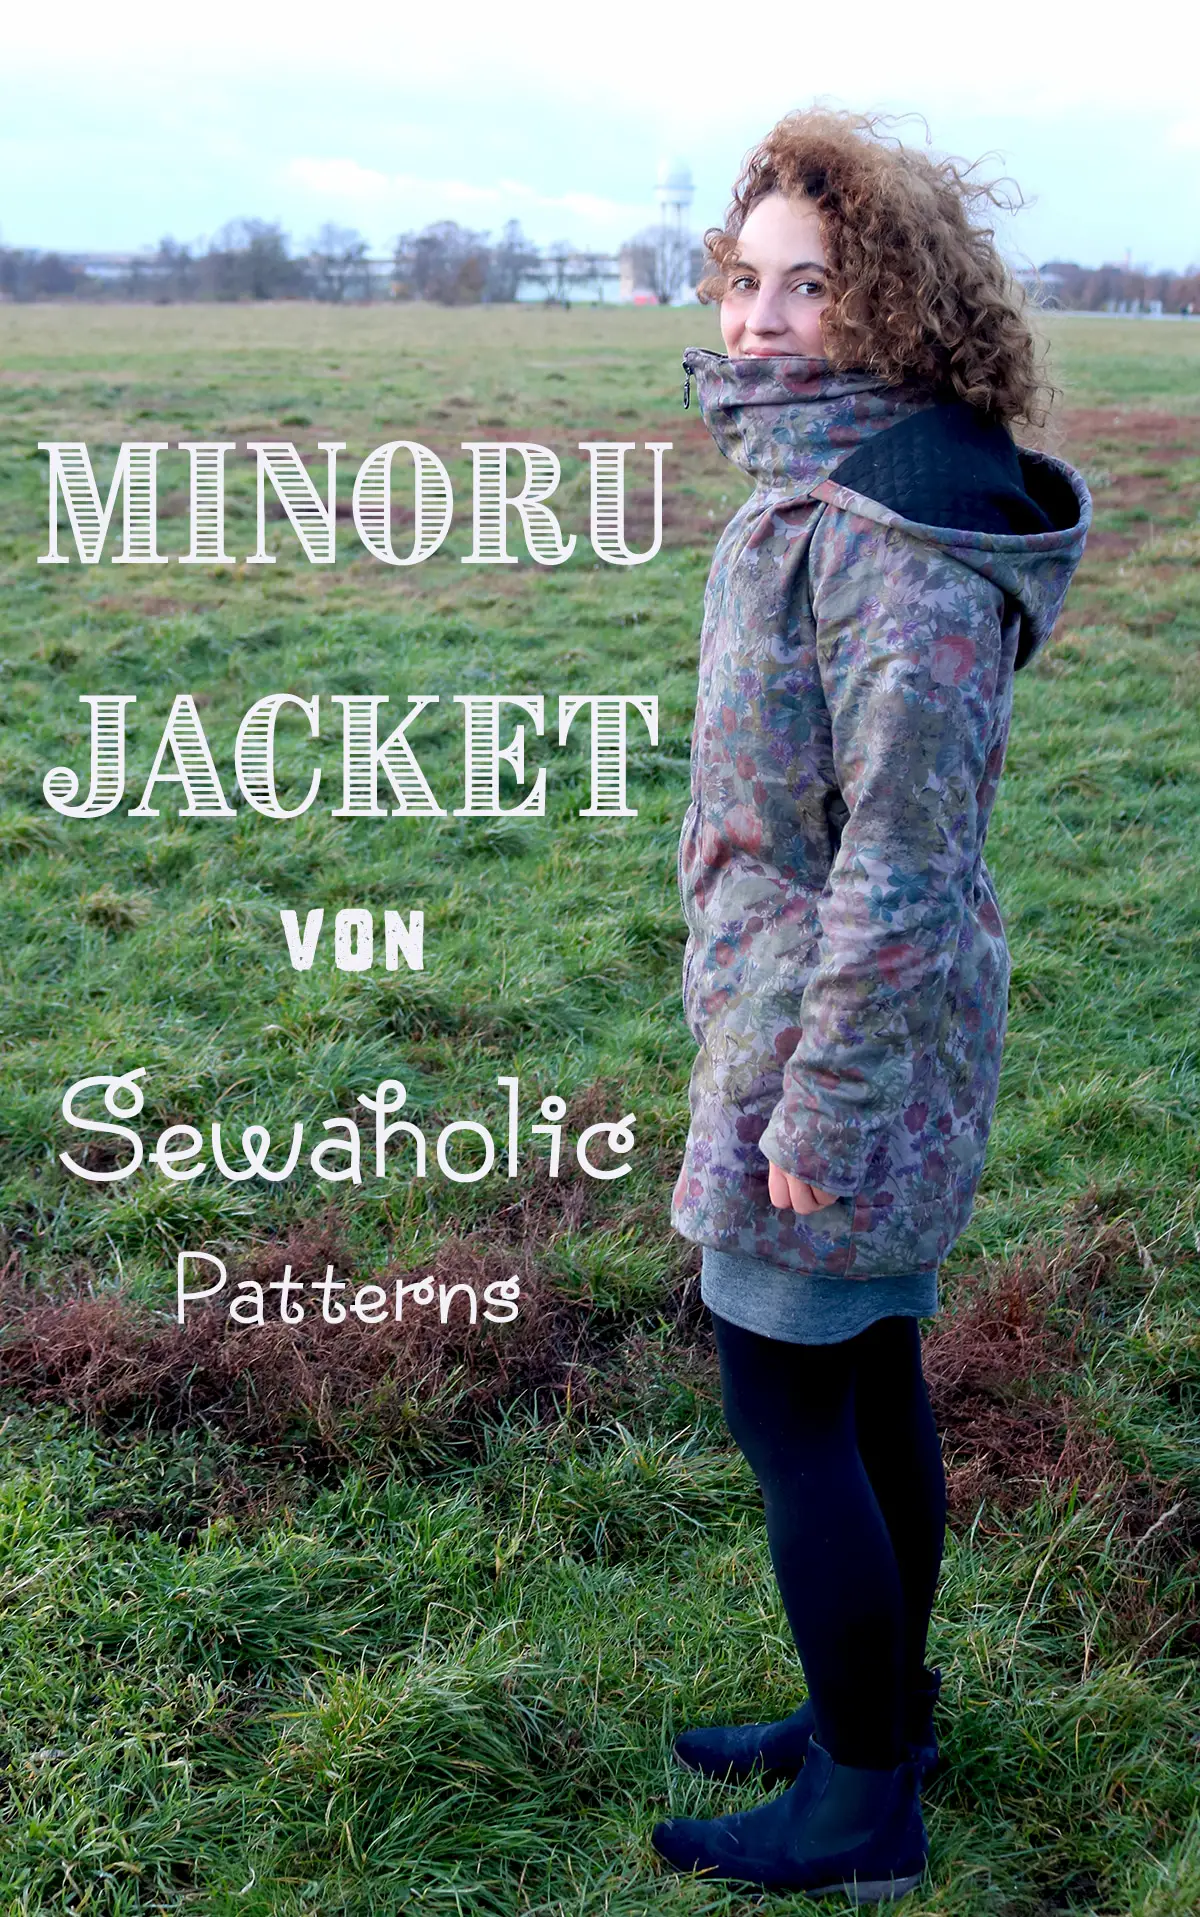 Minoru Jacket von Sewaholic Patterns - Herbstjacke nähen